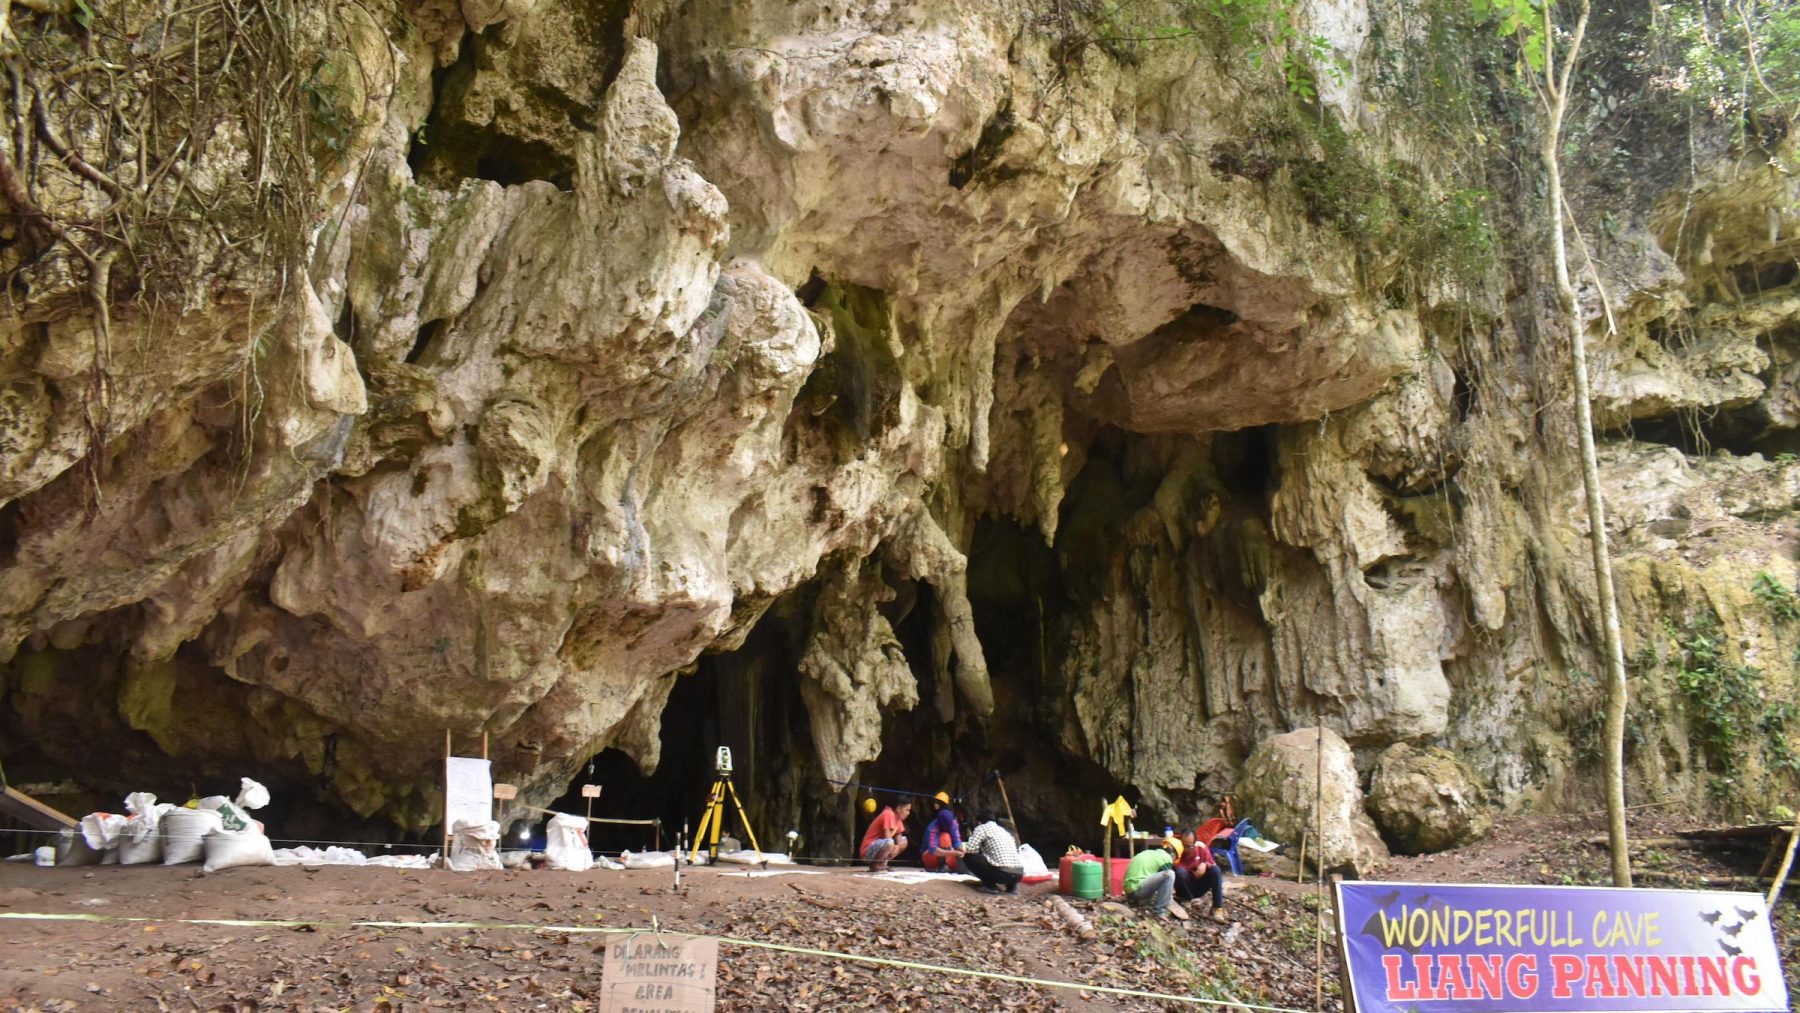 Вход в пещеру Паннинге, где ученые обнаружили новый геном человека. Предоставлено: исследовательский проект Леанг Паннинге.